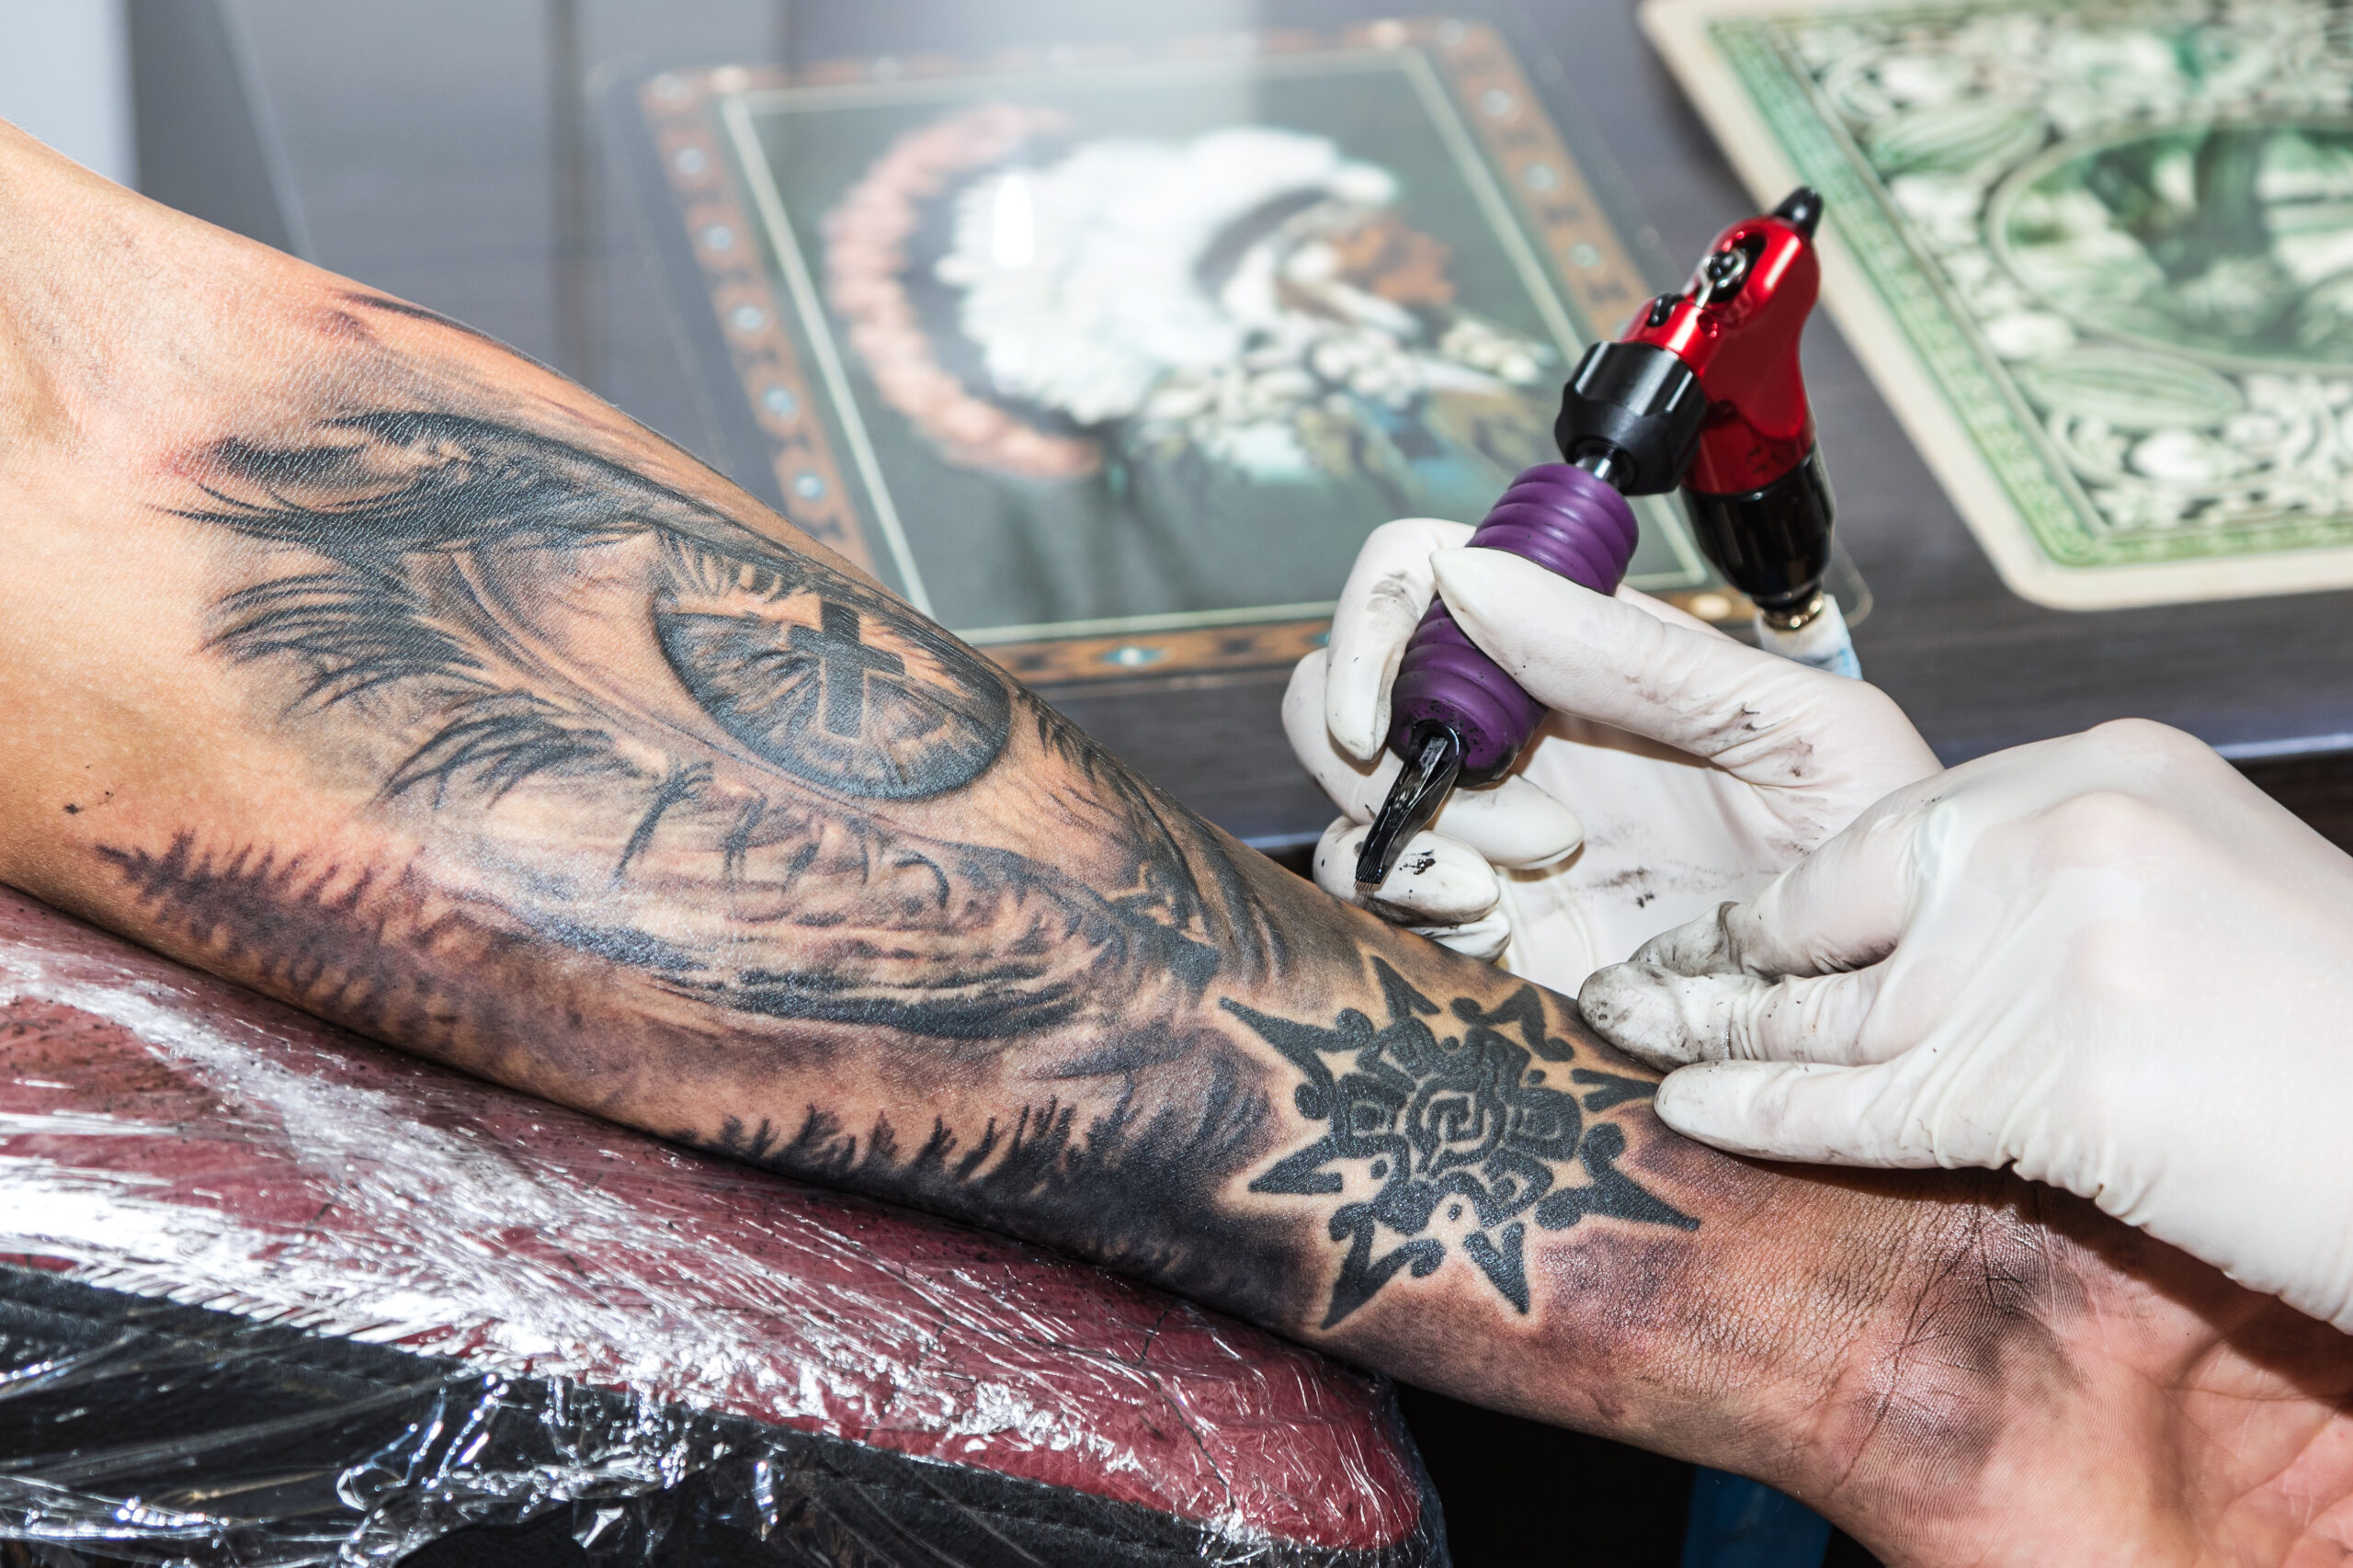 Na obrazku możemy zobaczyć artystę tatuażu, który tworzy imponujący męski tatuaż tribal na przedramieniu. Jego precyzyjne ruchy i umiejętności artystyczne są widoczne, gdy geometryczne wzory i linie zaczynają nabierać kształtu, nadając ramionom i nadgarstkom mocny i odważny charakter.